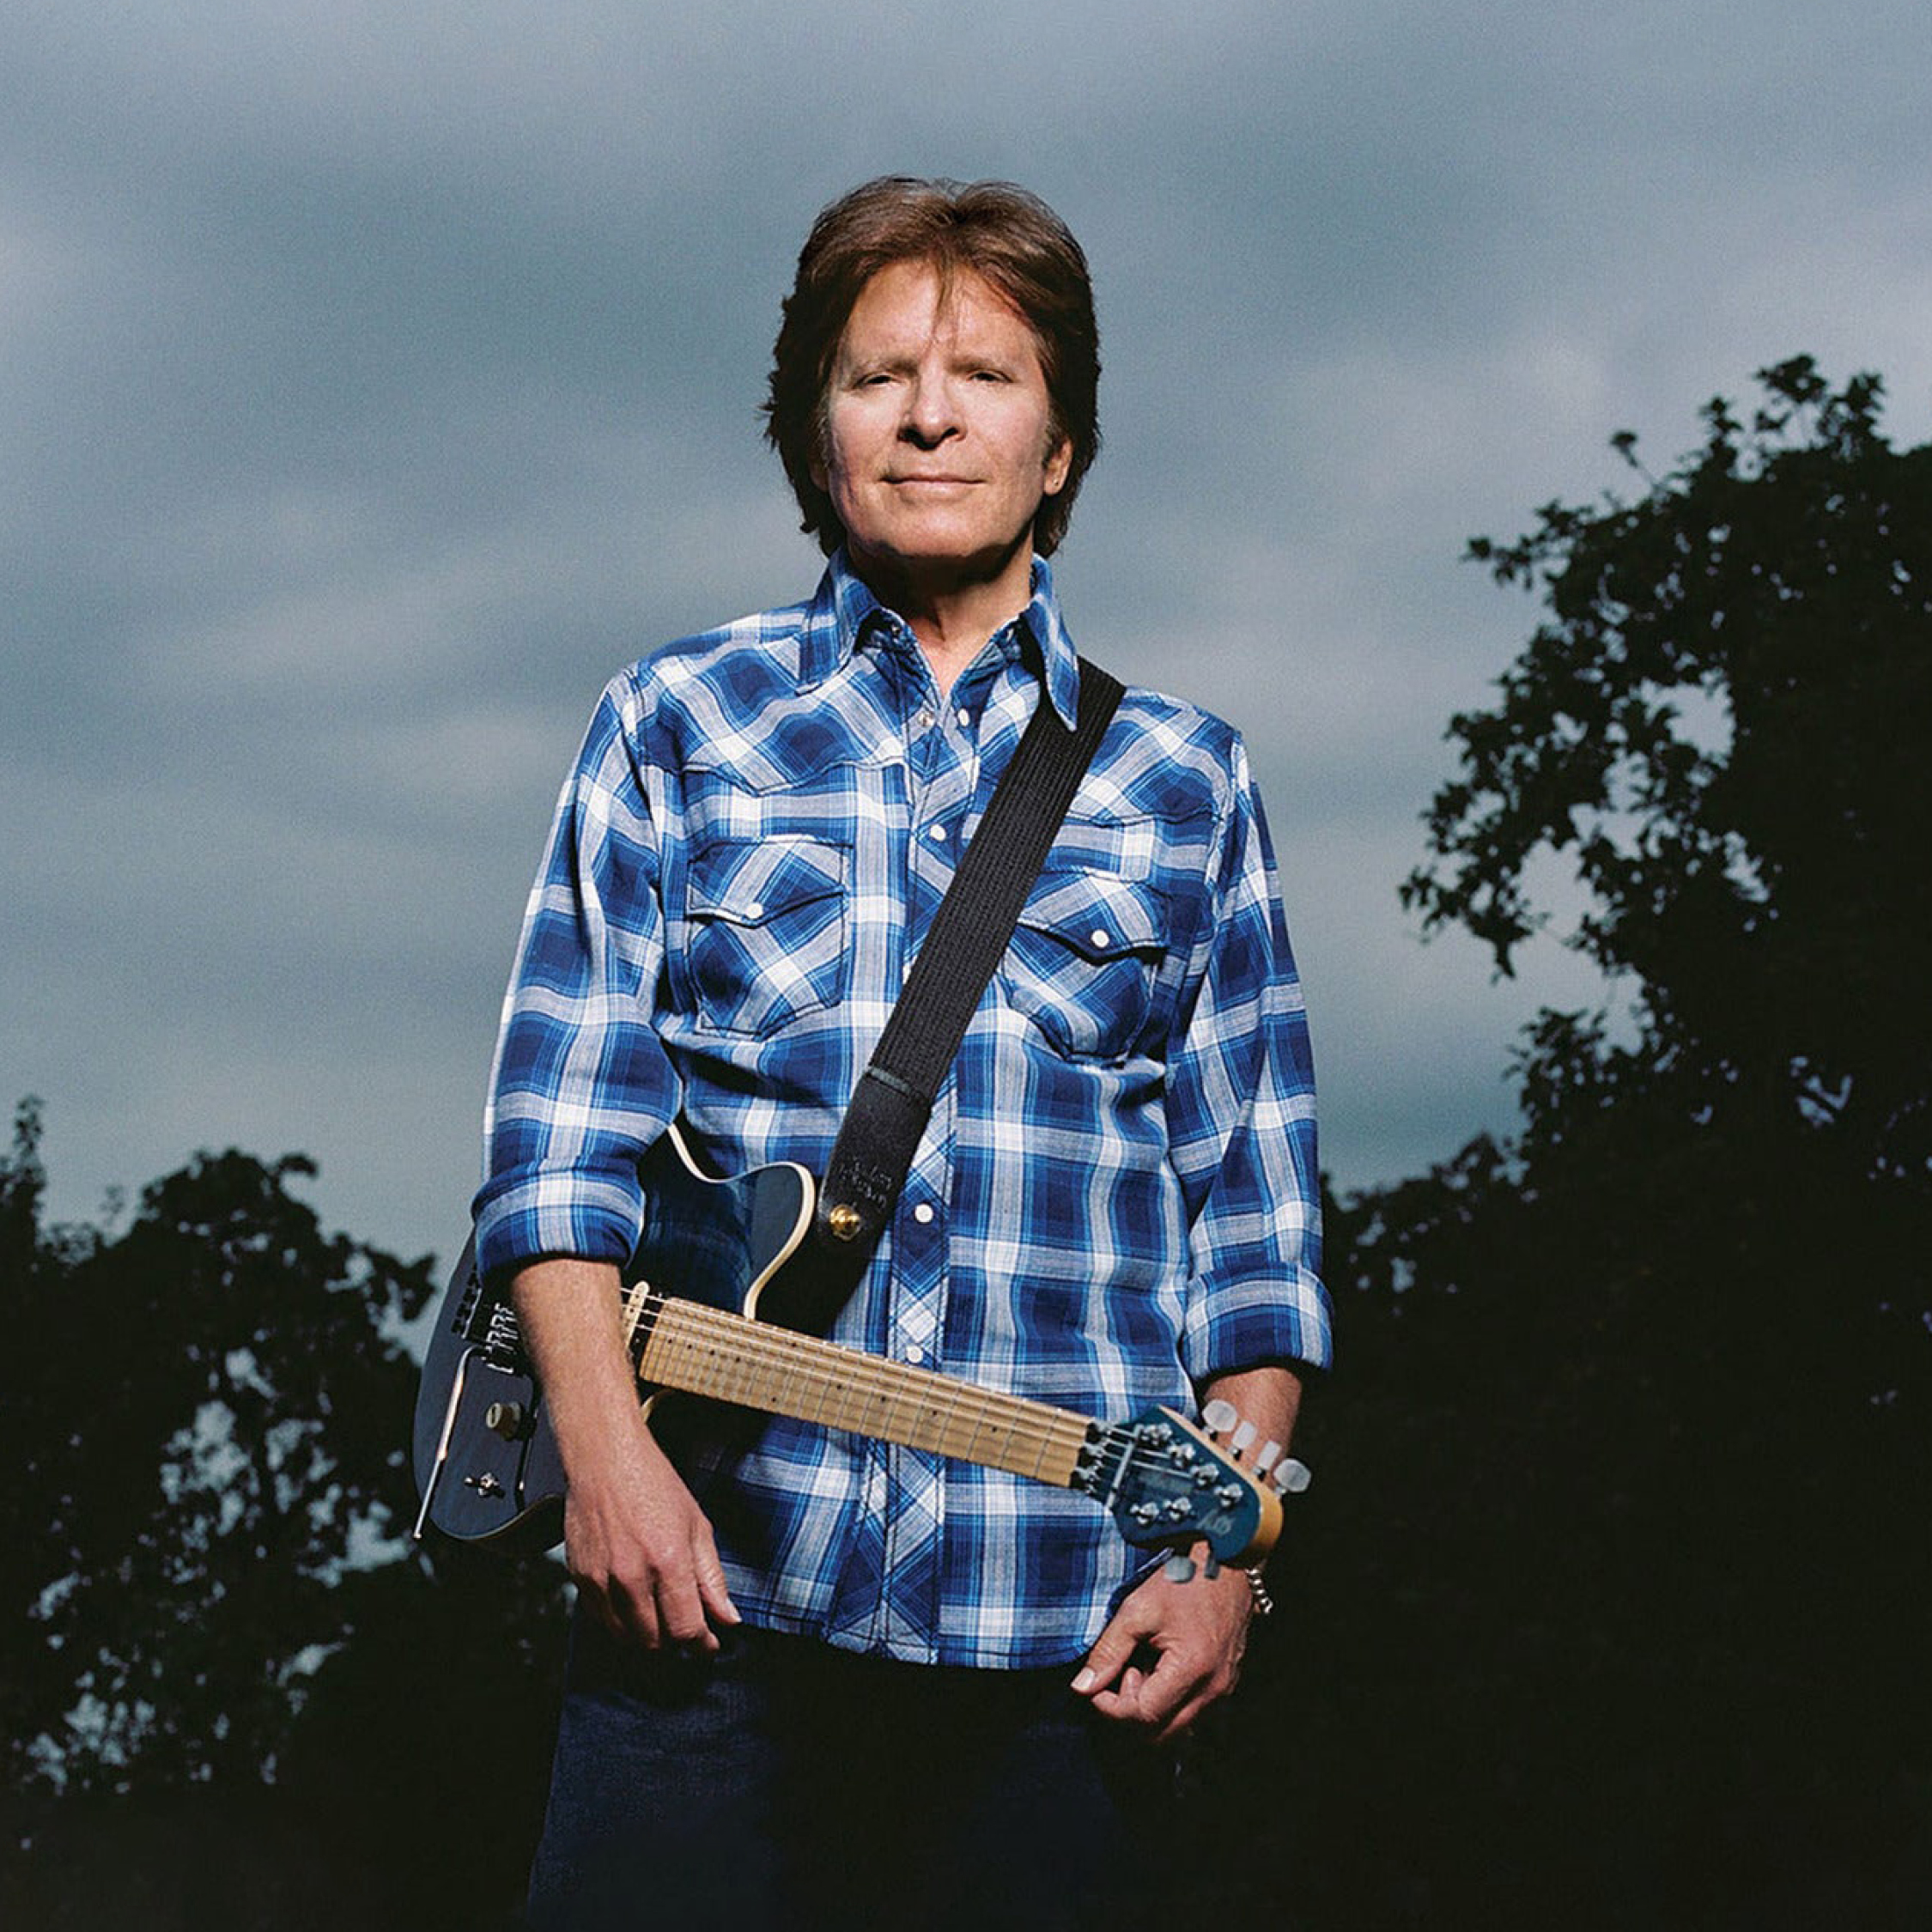 Billede af John Fogerty, iført blå skjorte med guitar